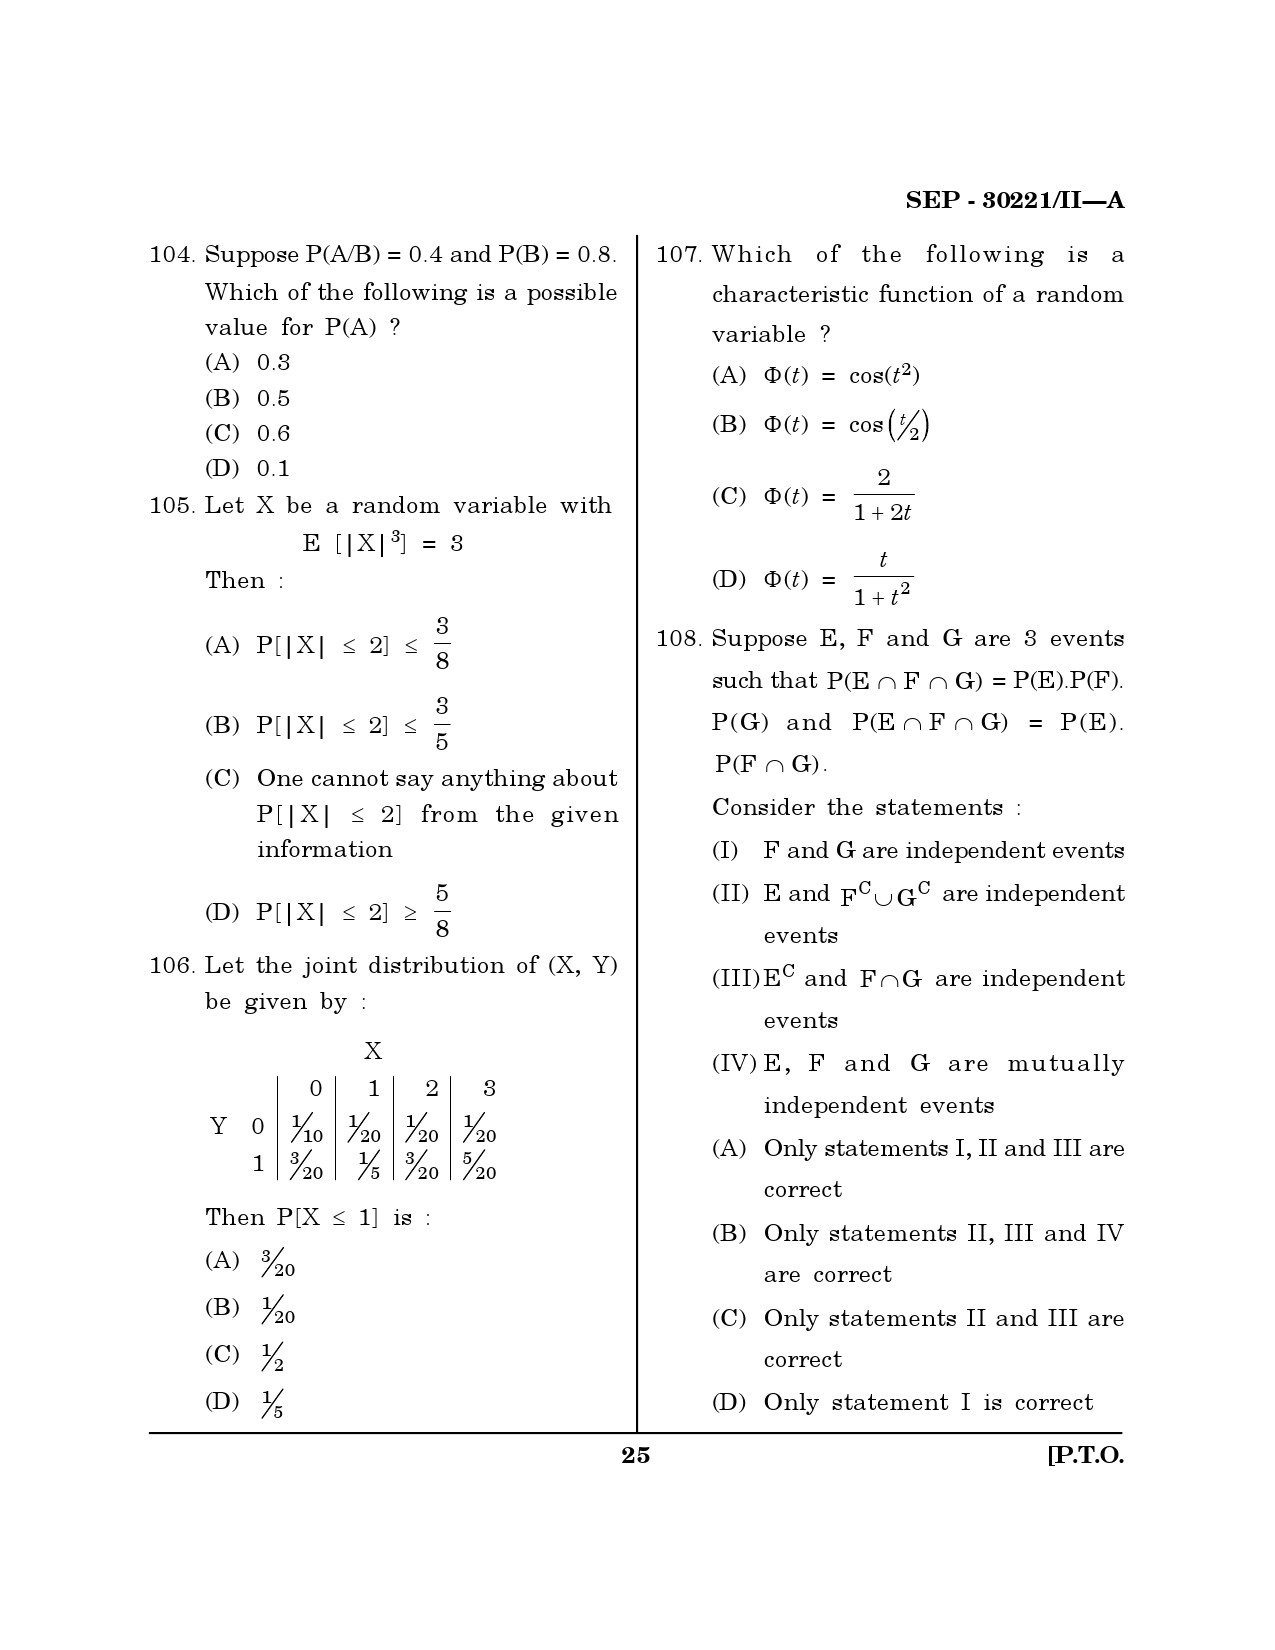 Maharashtra SET Mathematical Sciences Exam Question Paper September 2021 24